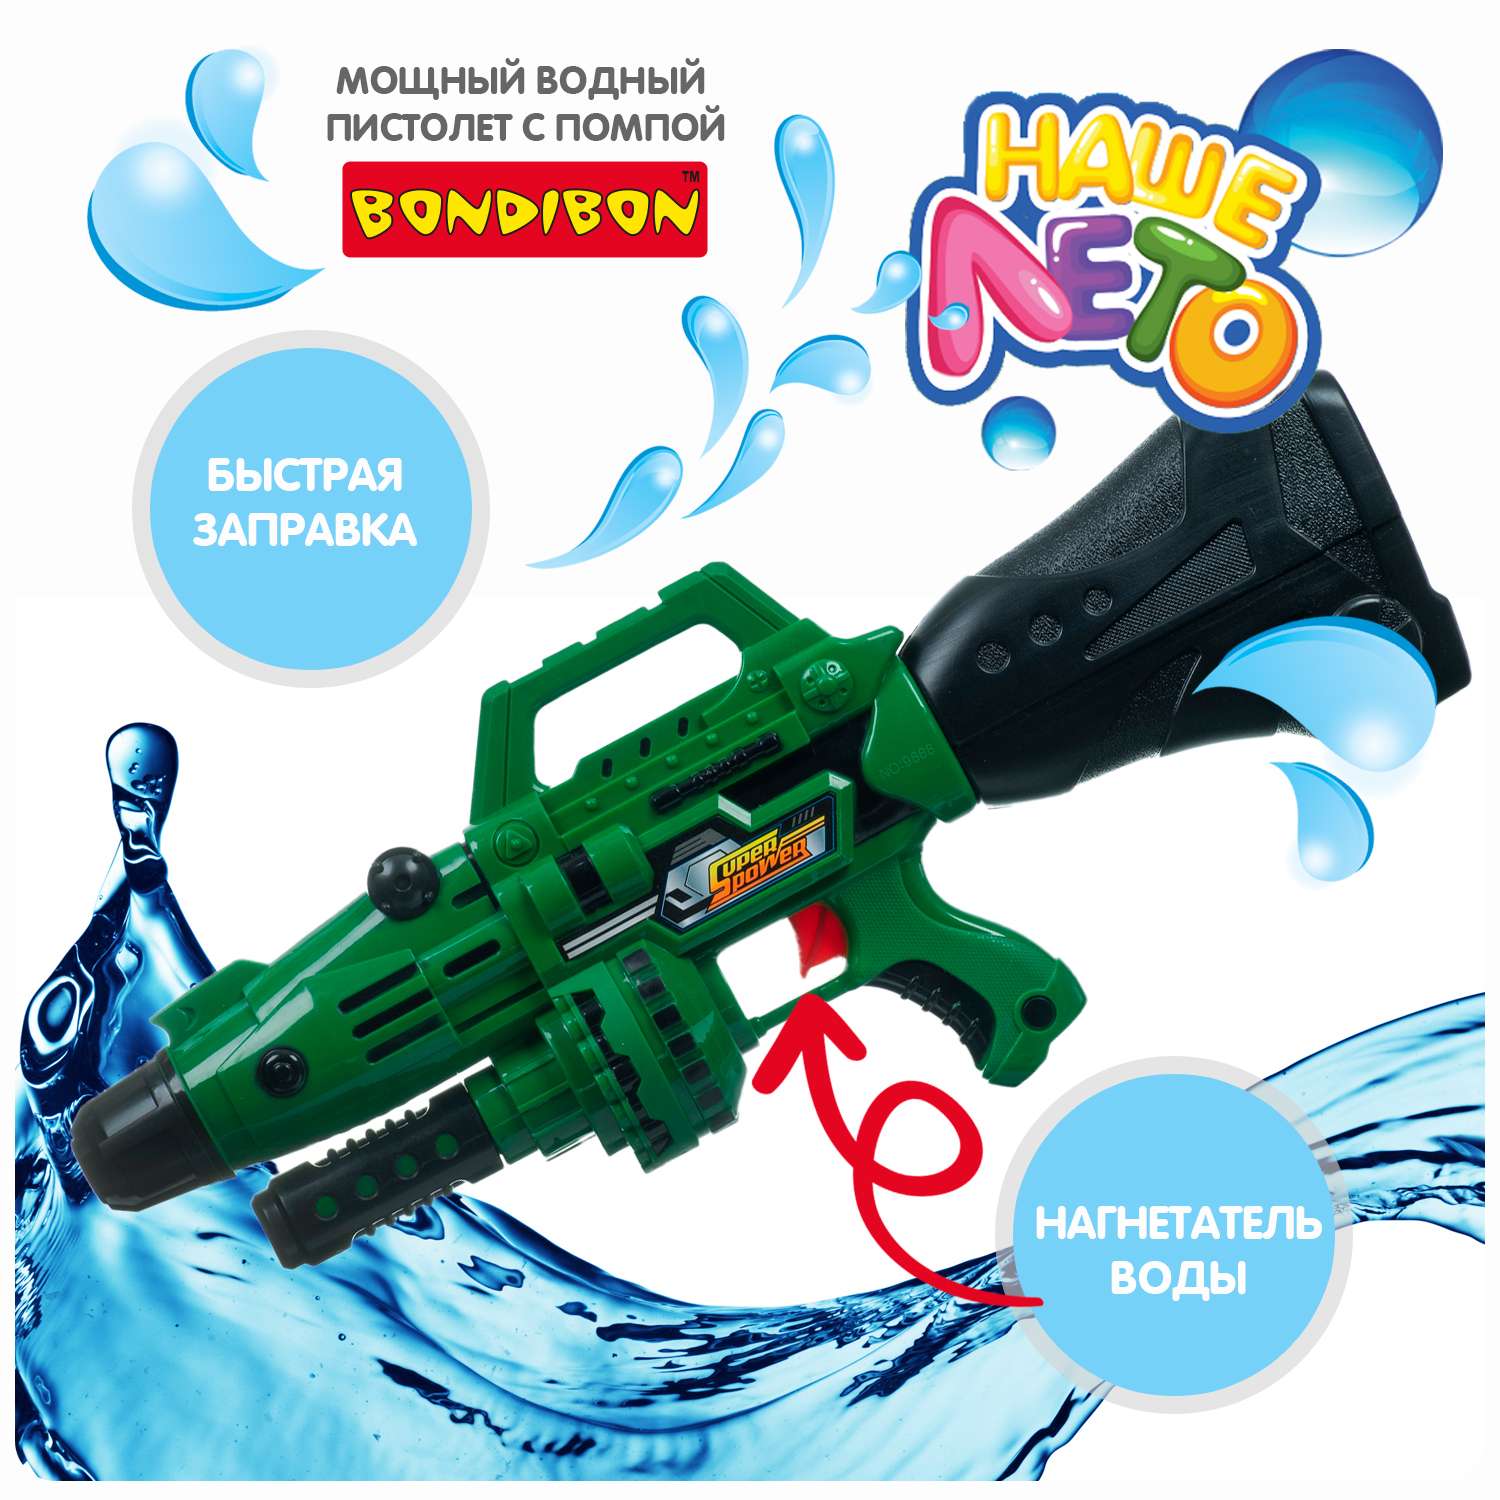 Водный пистолет с помпой BONDIBON серия Наше Лето милитари-зелёного цвета - фото 2